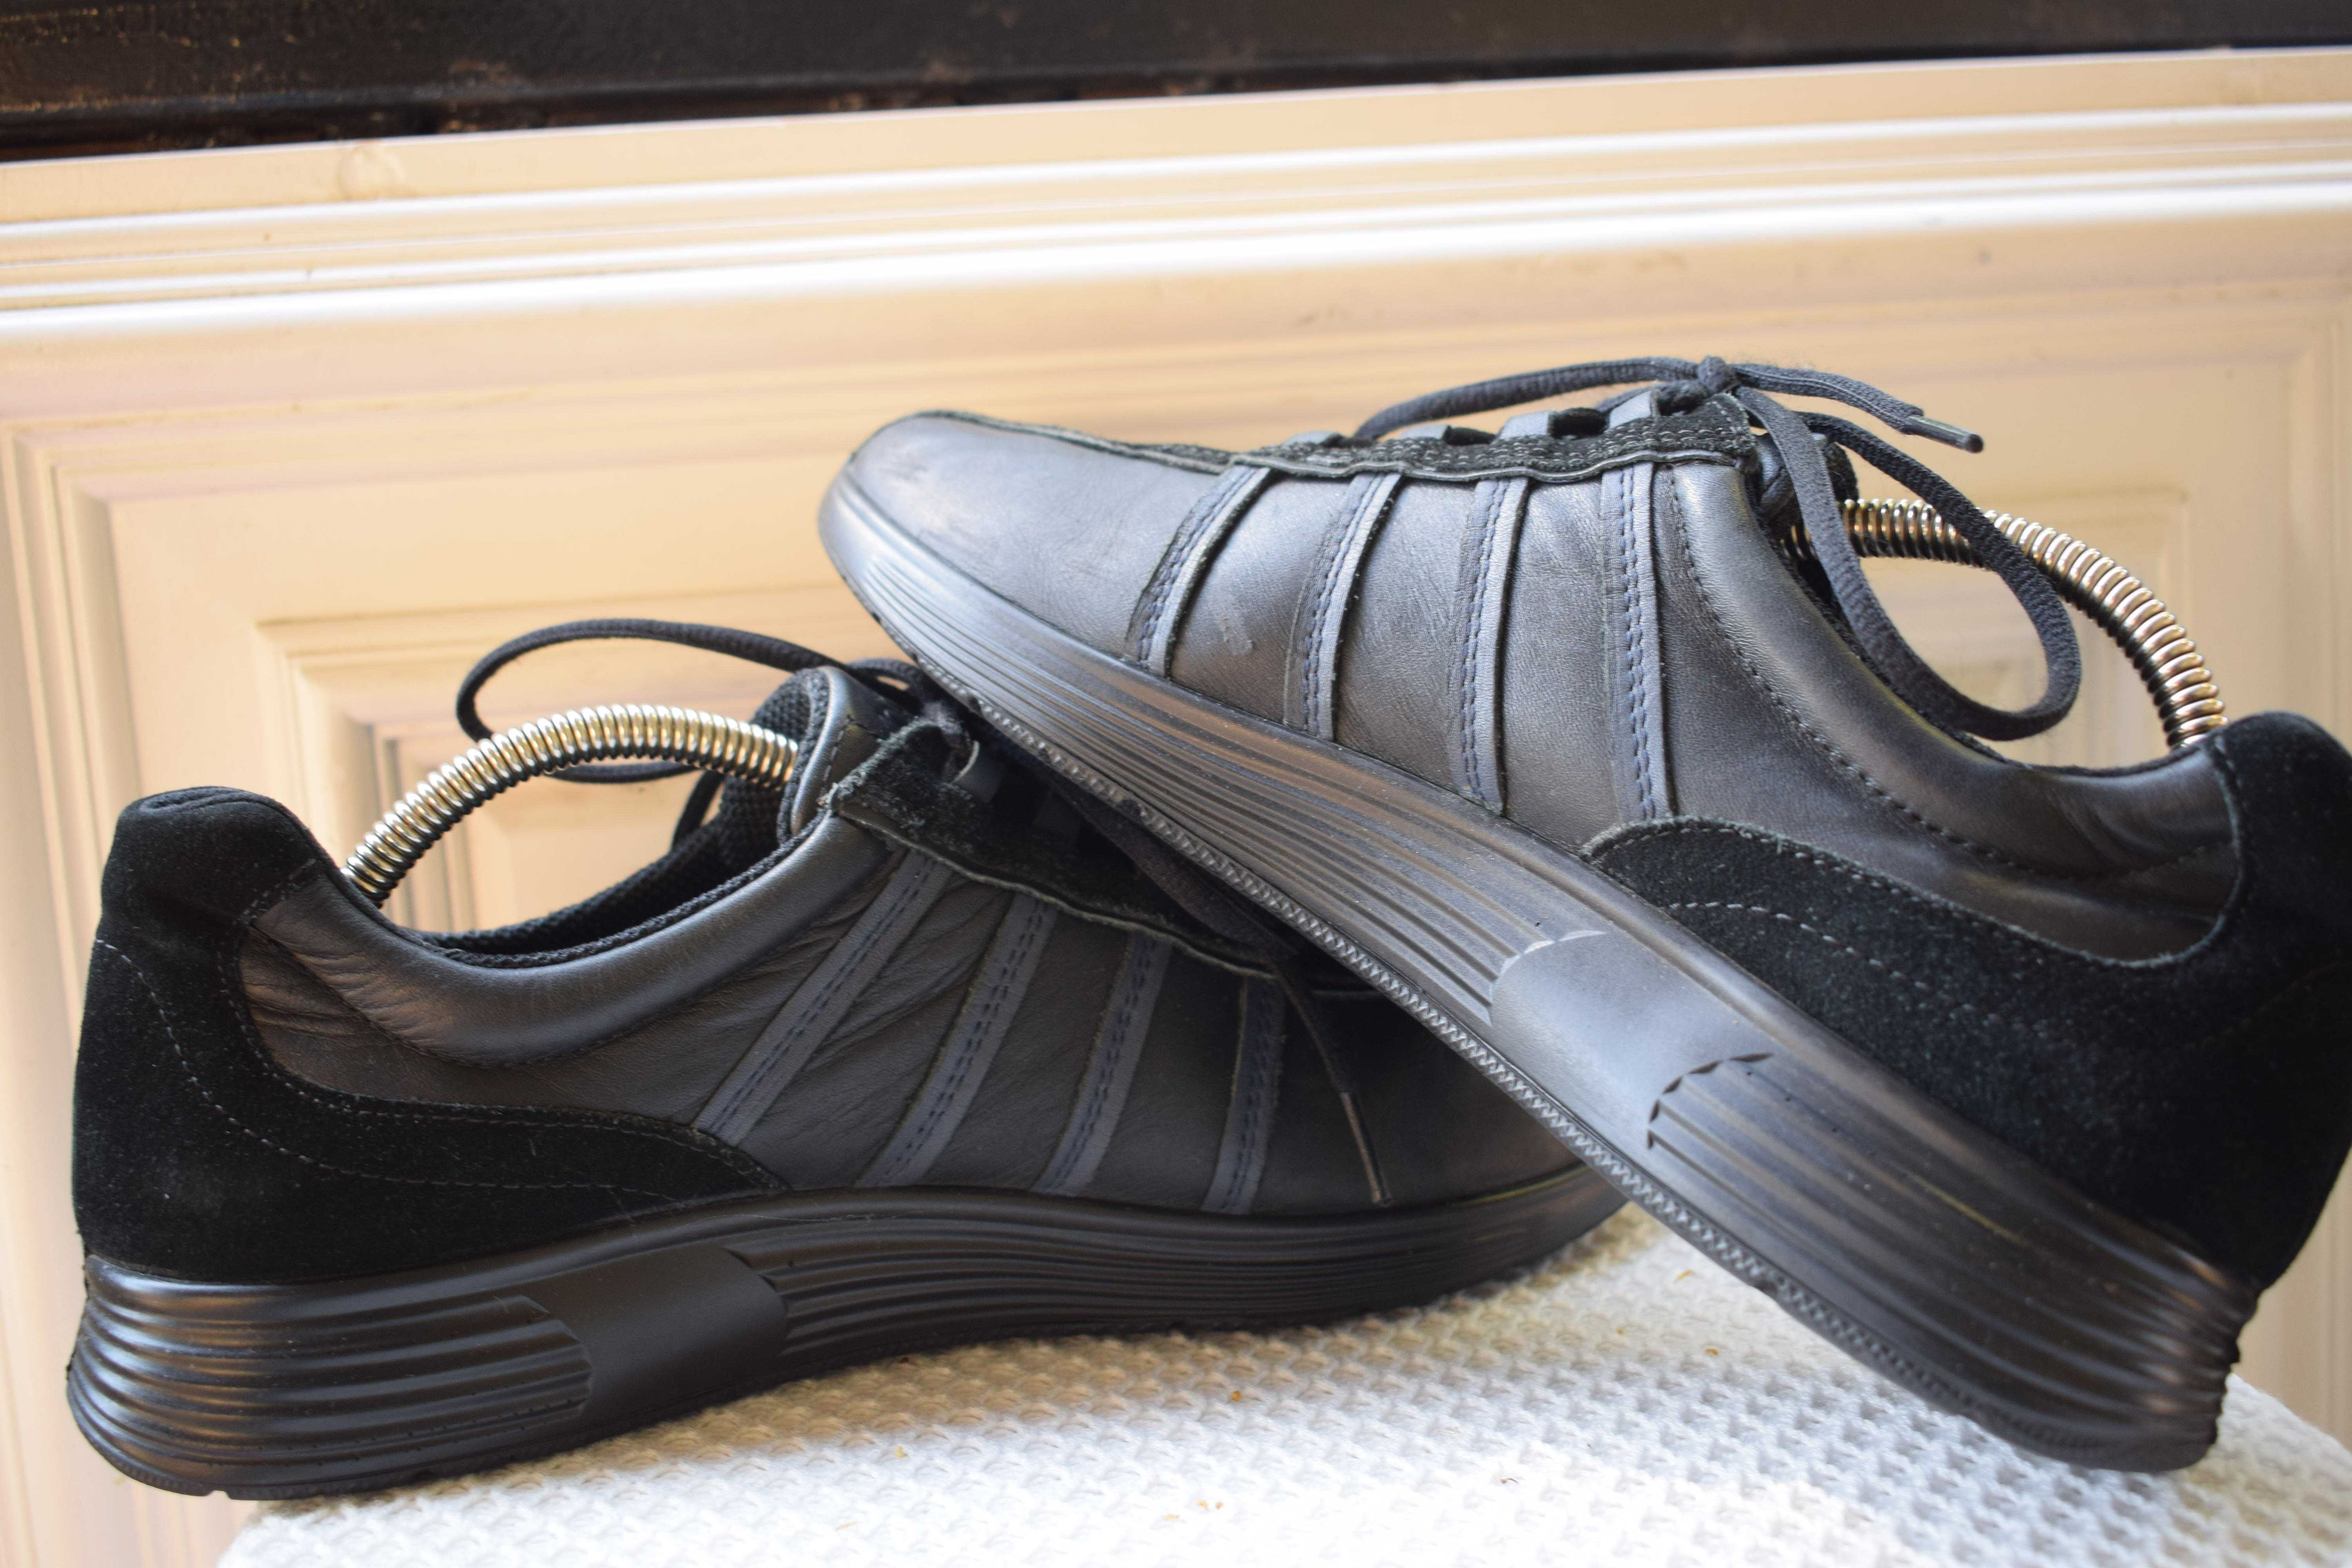 кожаные туфли кроссовки мокасины кросовки Hotter р. 41 27 см 42